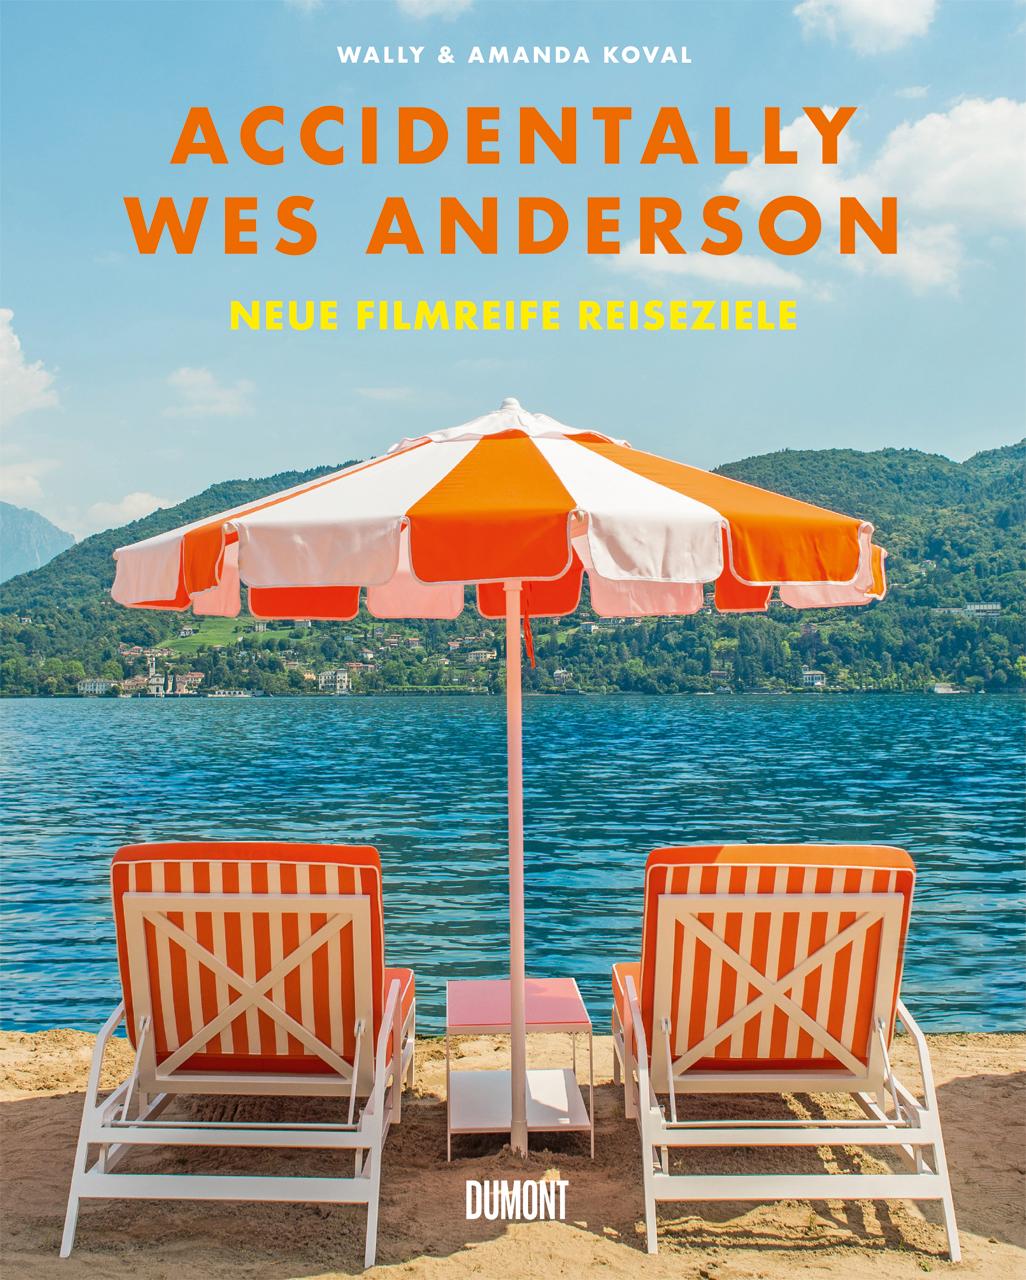 Kniha Accidentally Wes Anderson. Neue filmreife Reiseziele Stephan Kleiner